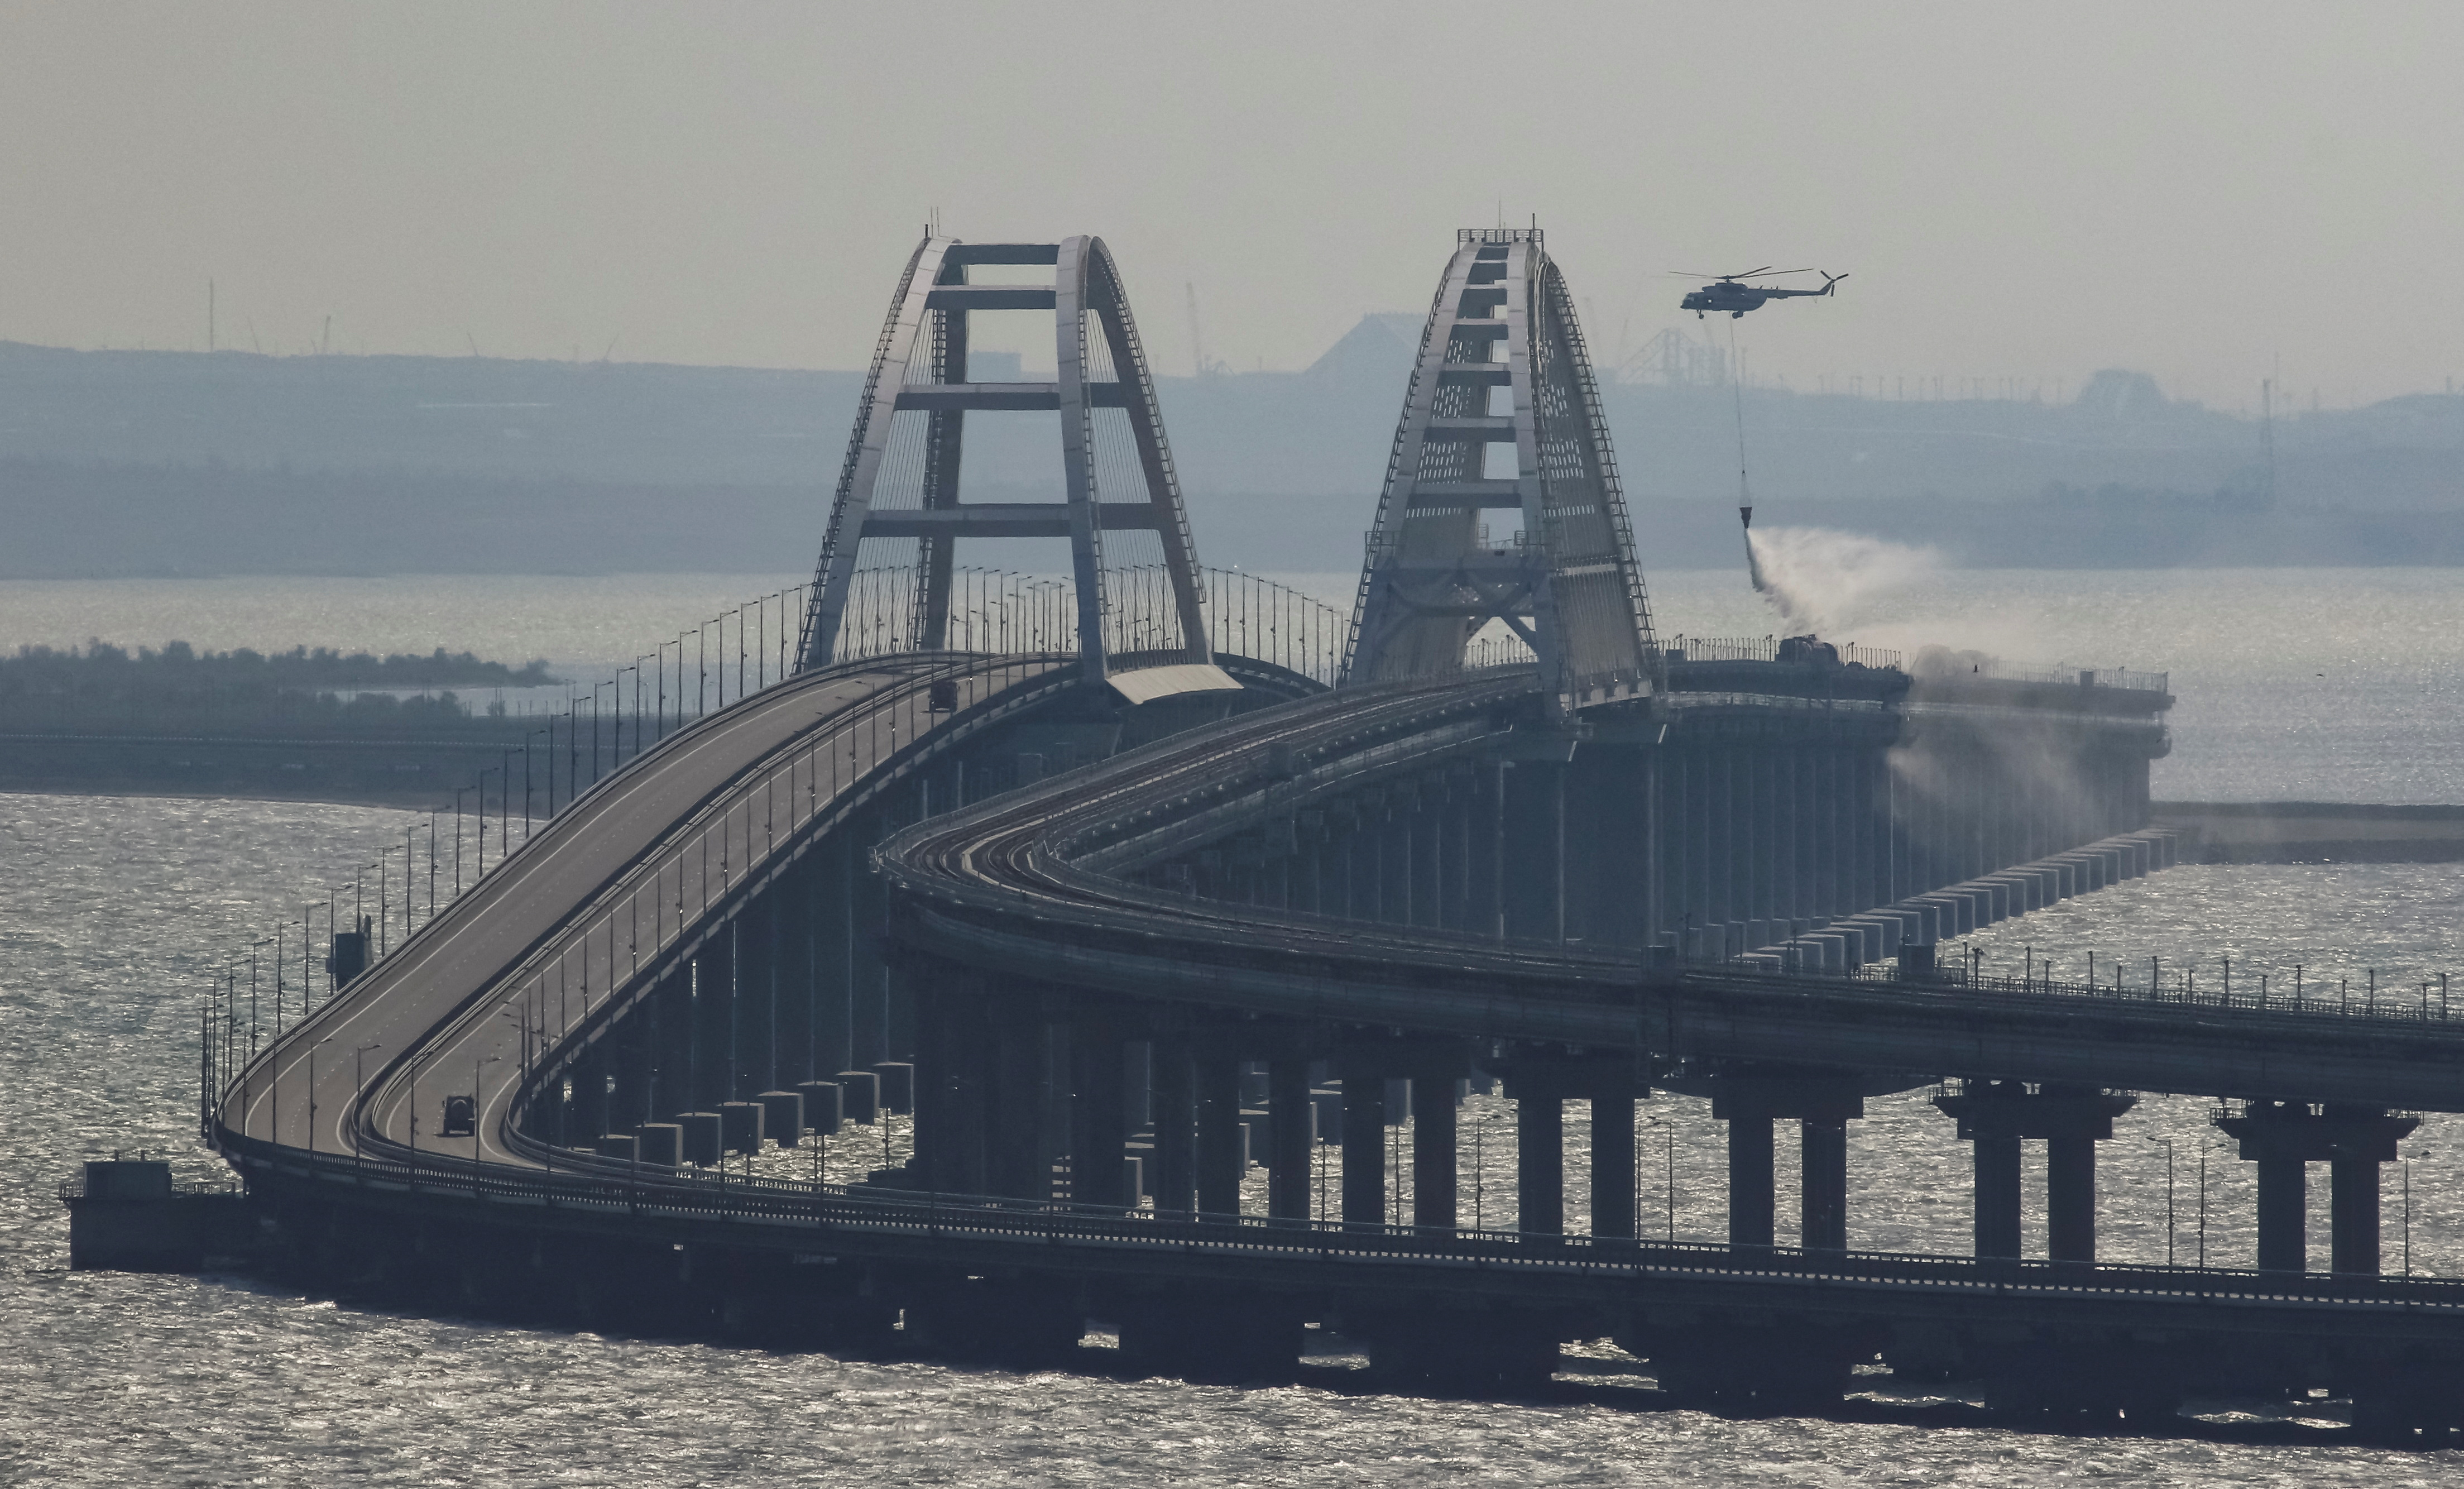 Un helicóptero apaga el fuego tras la explosión en el puente (REUTERS/Stringer)